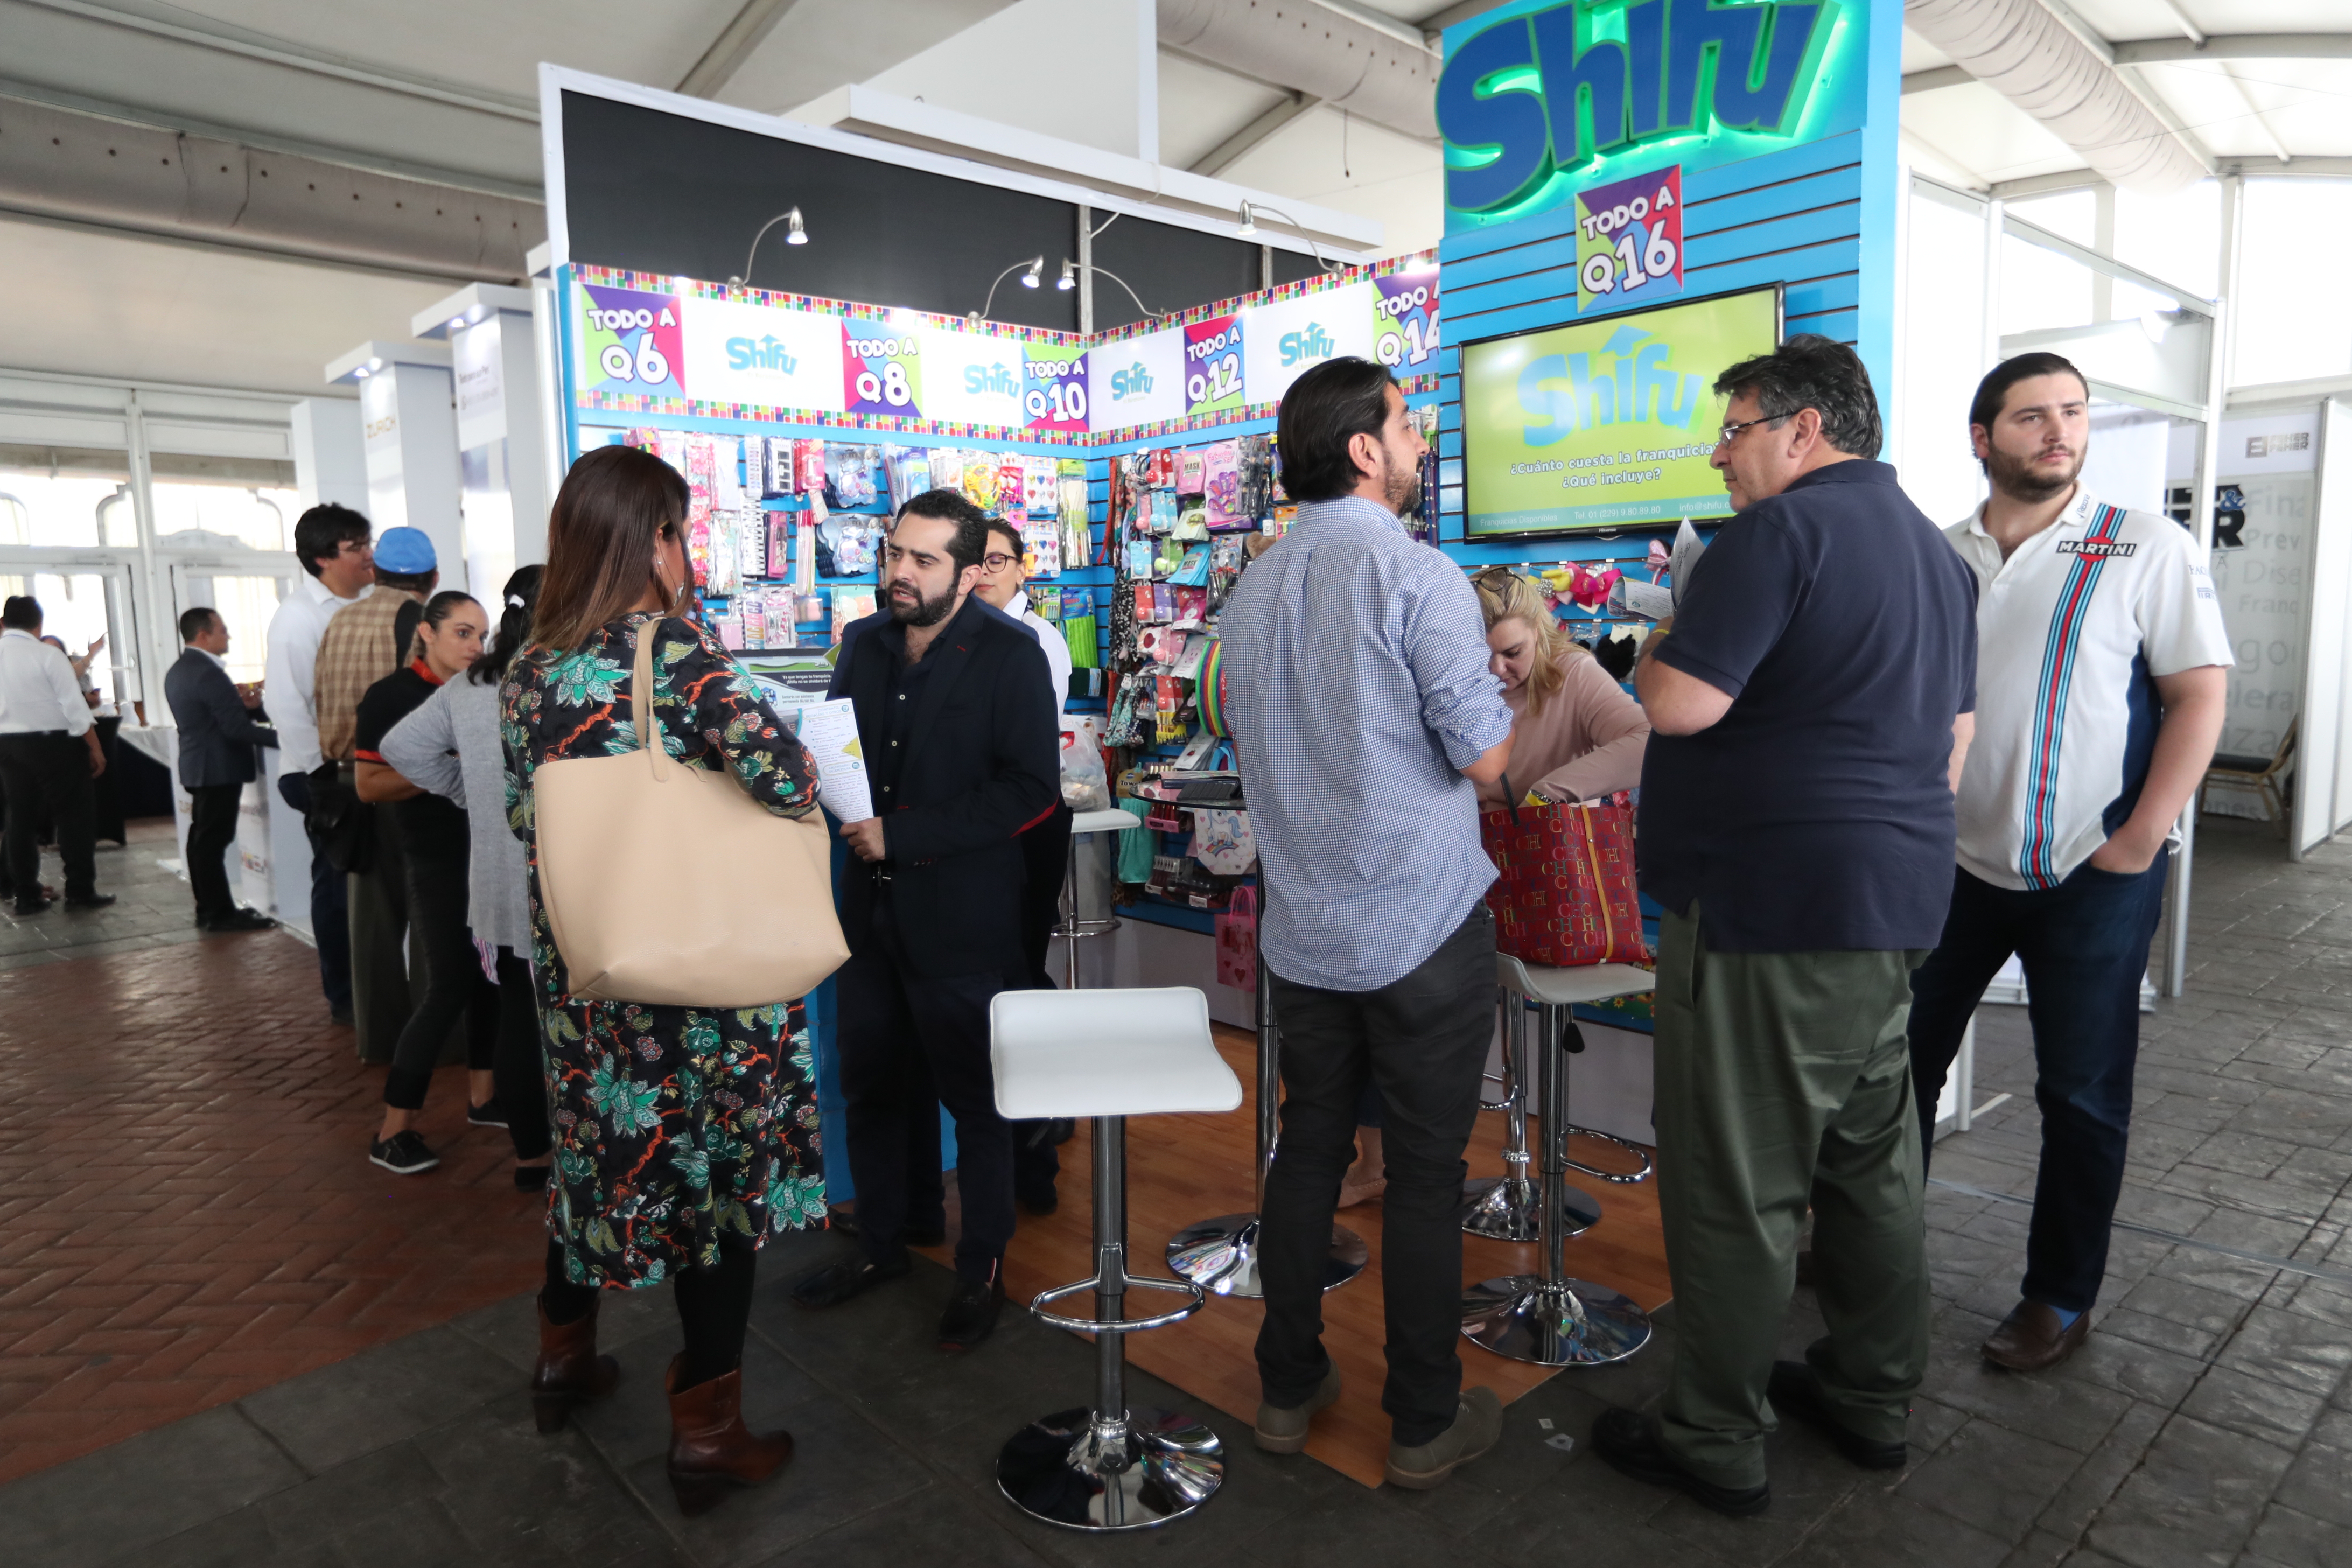 La microfranquicia Shifu participó en el Encuentro Internacional de Franquicias y en total vendieron 10 conceptos en Guatemala. (Foto Prensa Libre: Raúl Juárez)